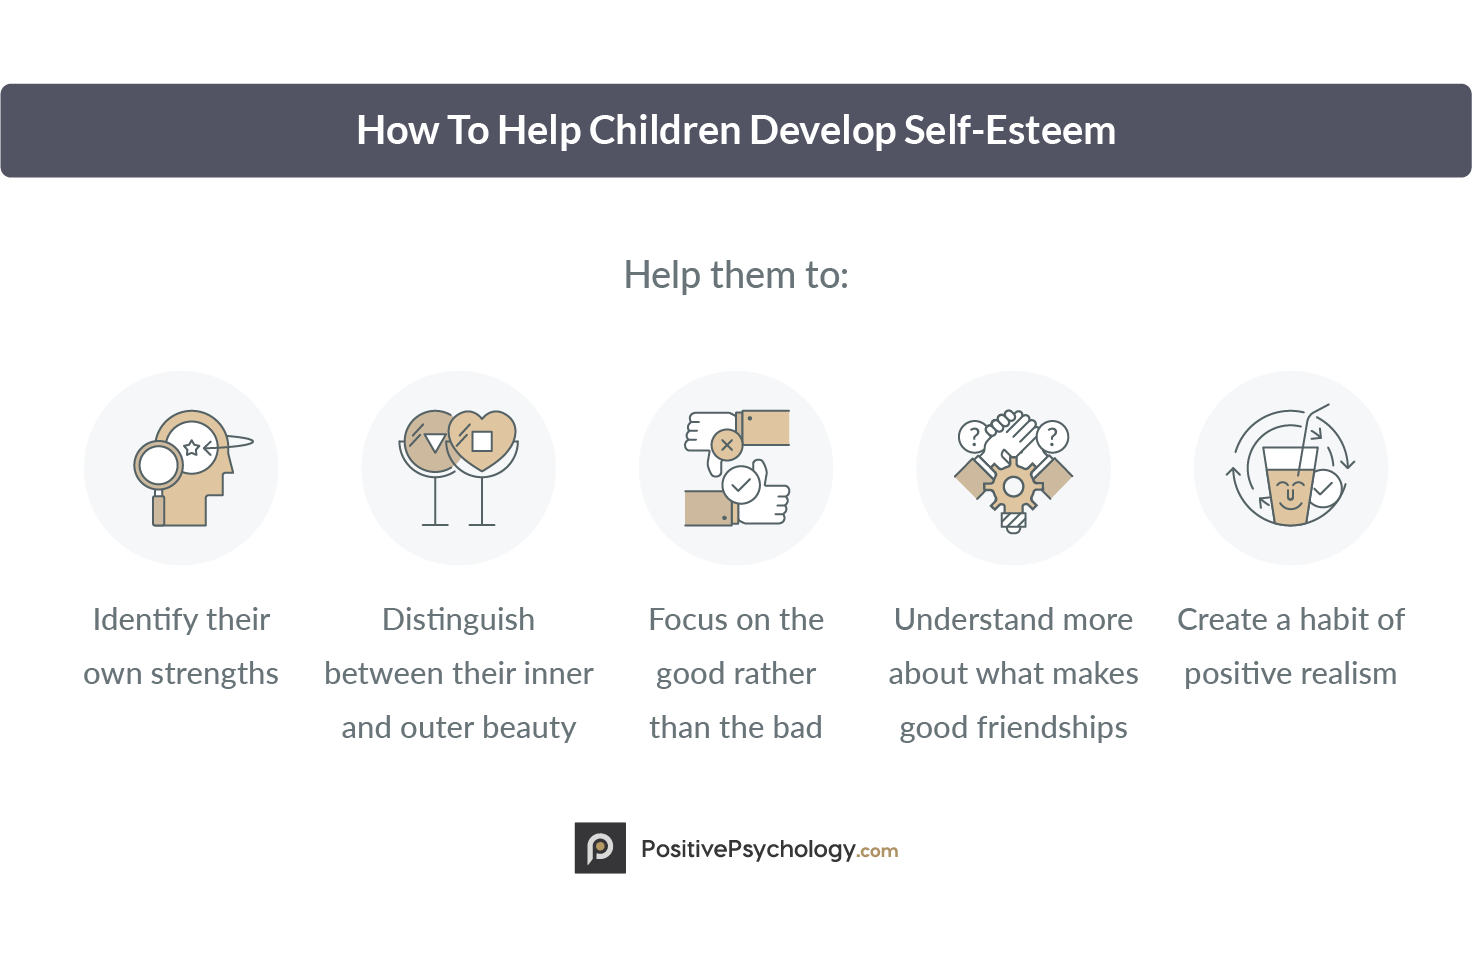 How To Help Children Develop Self-Esteem